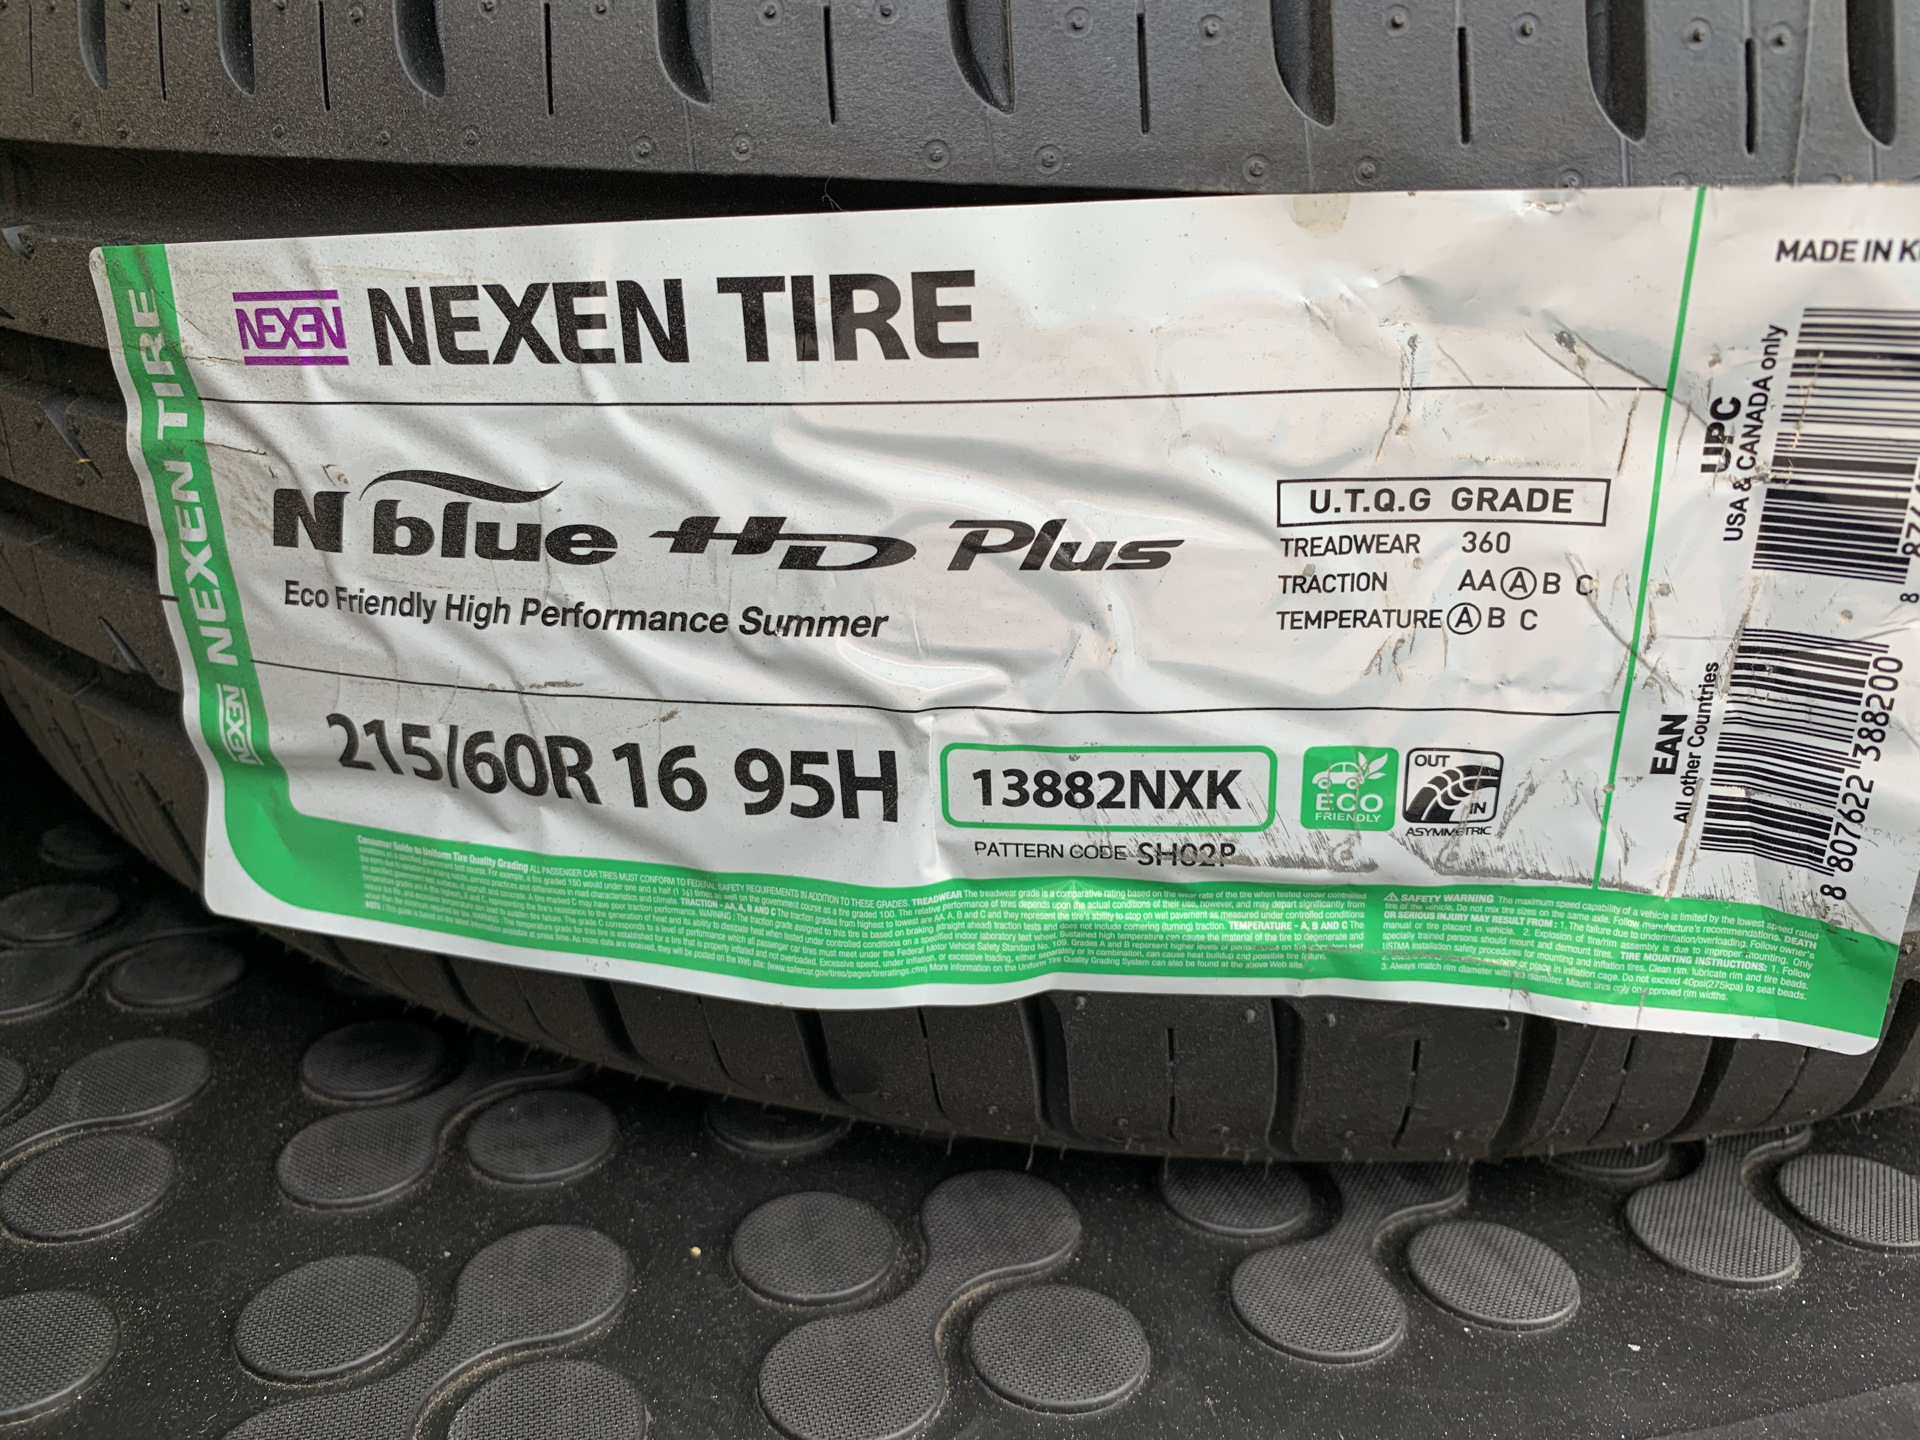 Nexen шины производство страна производитель. Шины Нексен лето. Nexen шины Страна производитель. Шины Нексен с зеленой полоской. Этикетка шины Нексен ру5.